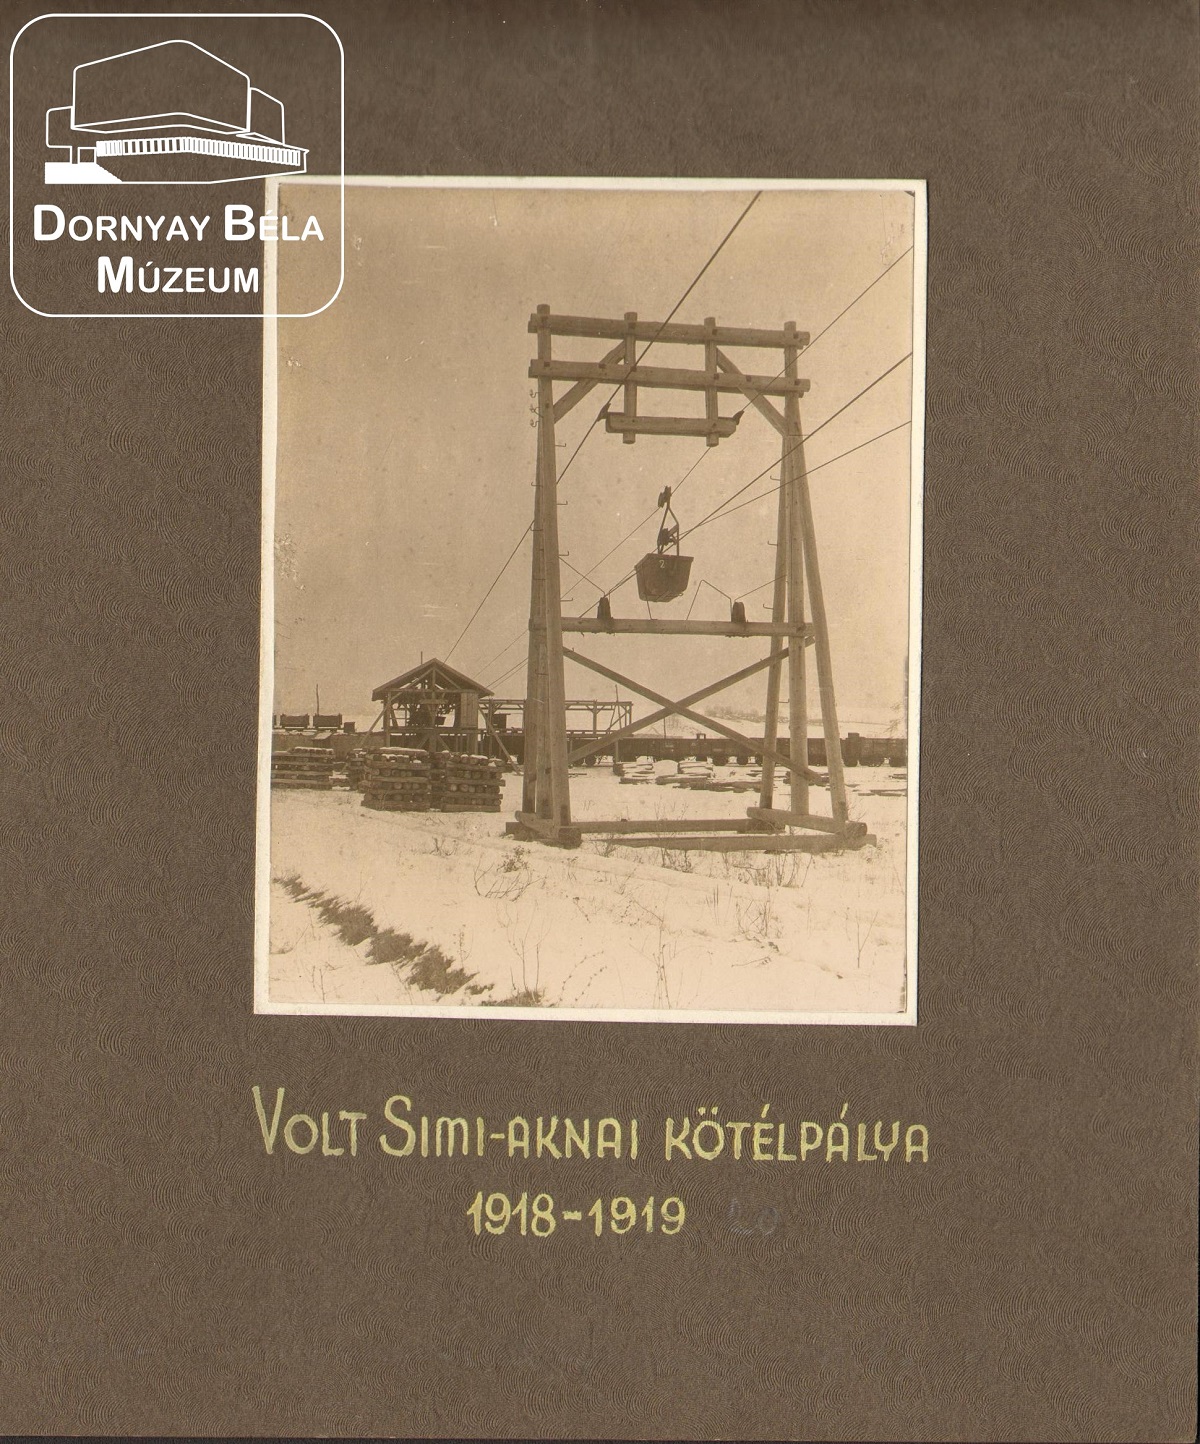 Bányászat. Sini- aknai kötélpálya. 1918-1920 (Dornyay Béla Múzeum, Salgótarján CC BY-NC-SA)